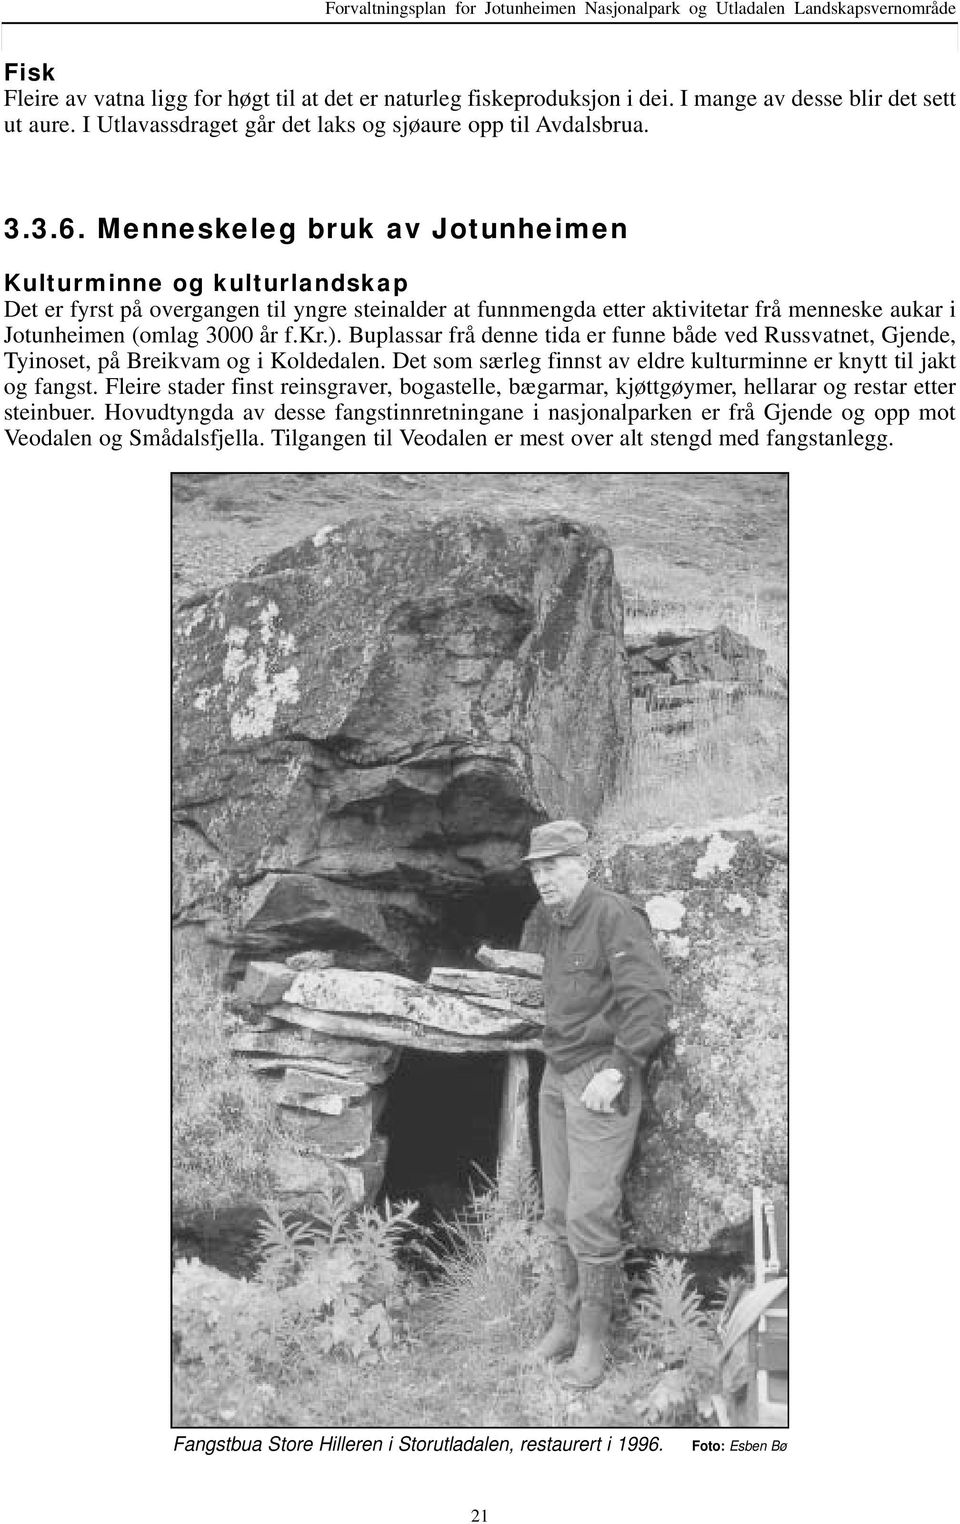 Menneskeleg ruk v Jotunheimen Kulturminne og kulturlndskp Det er fyrst på overgngen til yngre steinlder t funnmengd etter ktivitetr frå menneske ukr i Jotunheimen (omlg 3000 år f.kr.).